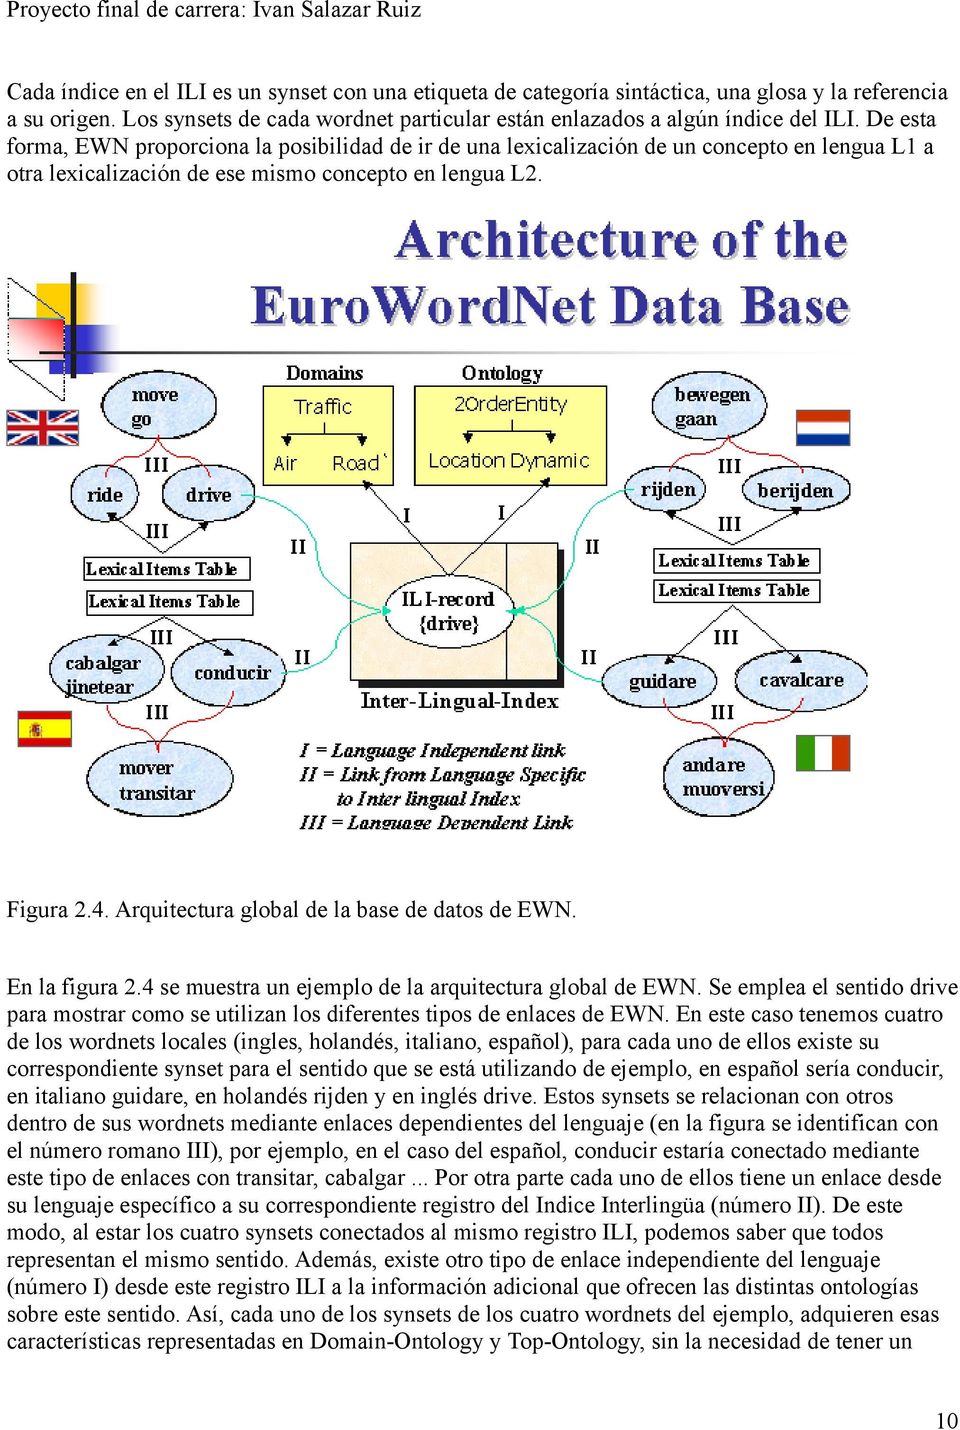 Arquitectura global de la base de datos de EWN. En la figura 2.4 se muestra un ejemplo de la arquitectura global de EWN.